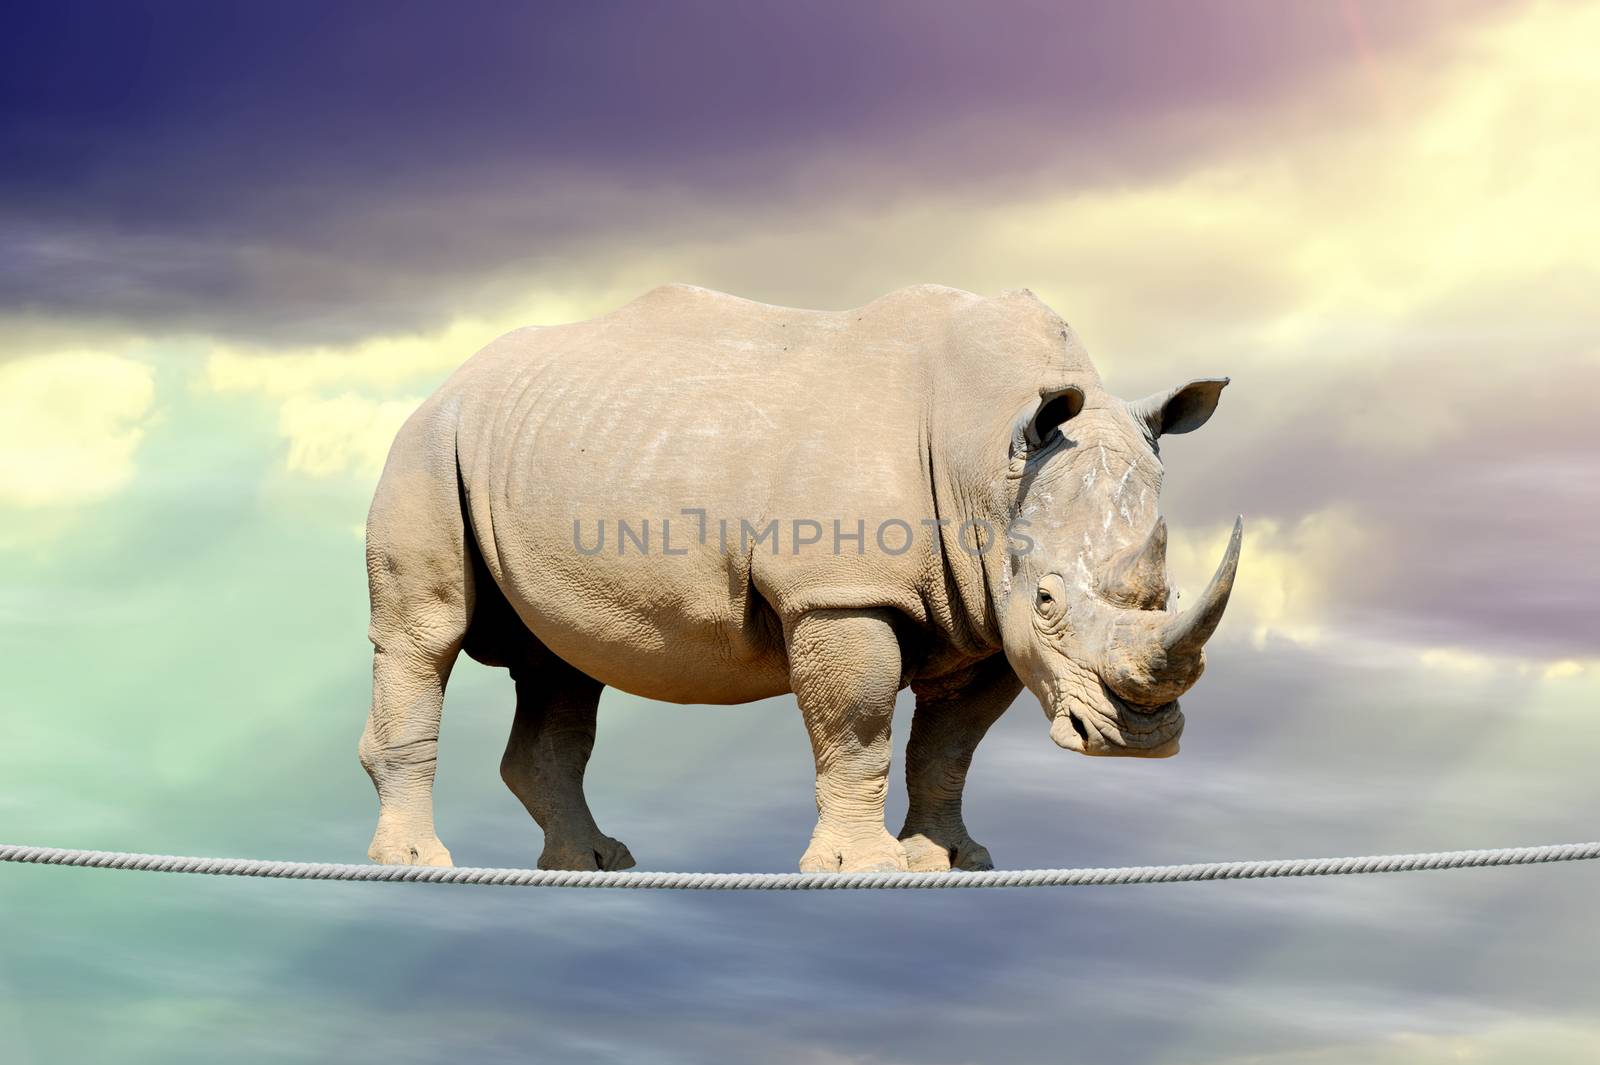 Rhino walking on a rope by byrdyak